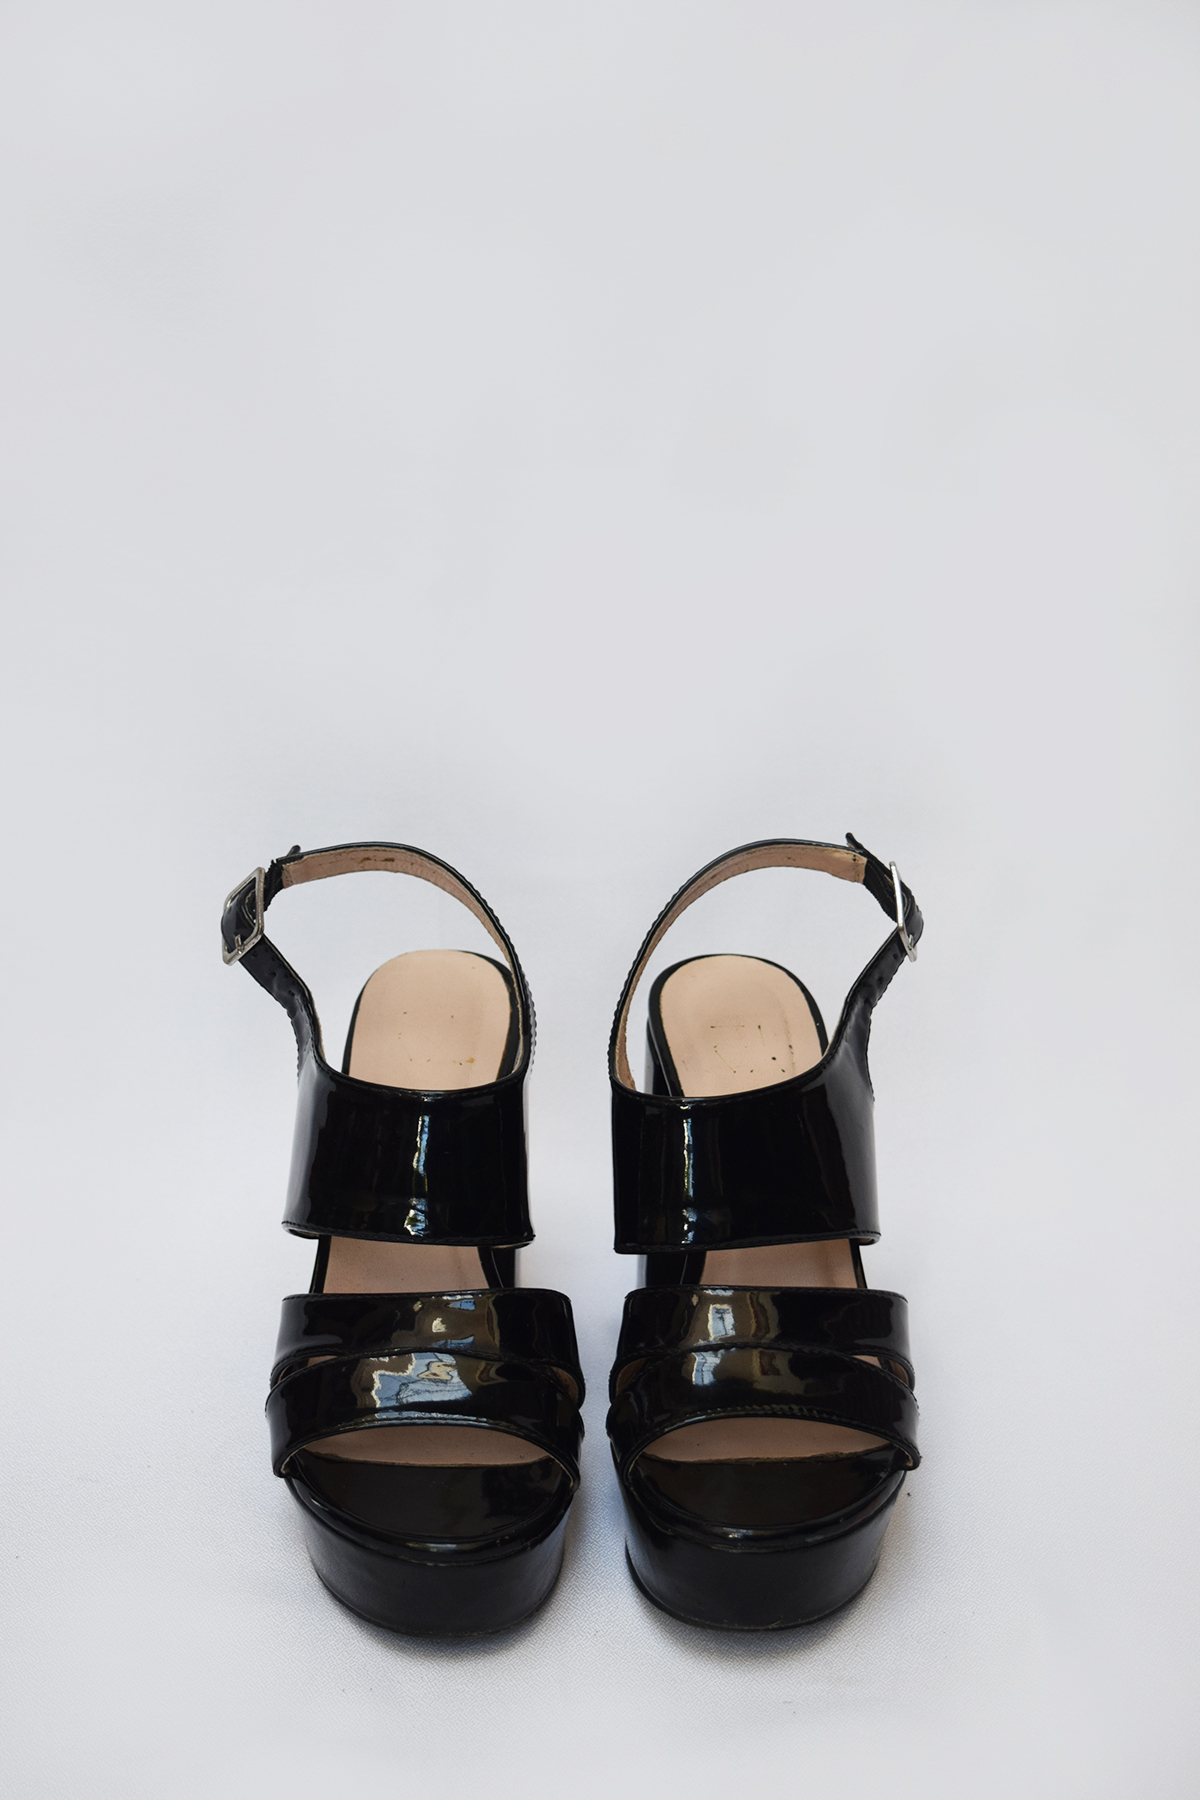 Sandalias de charol negras